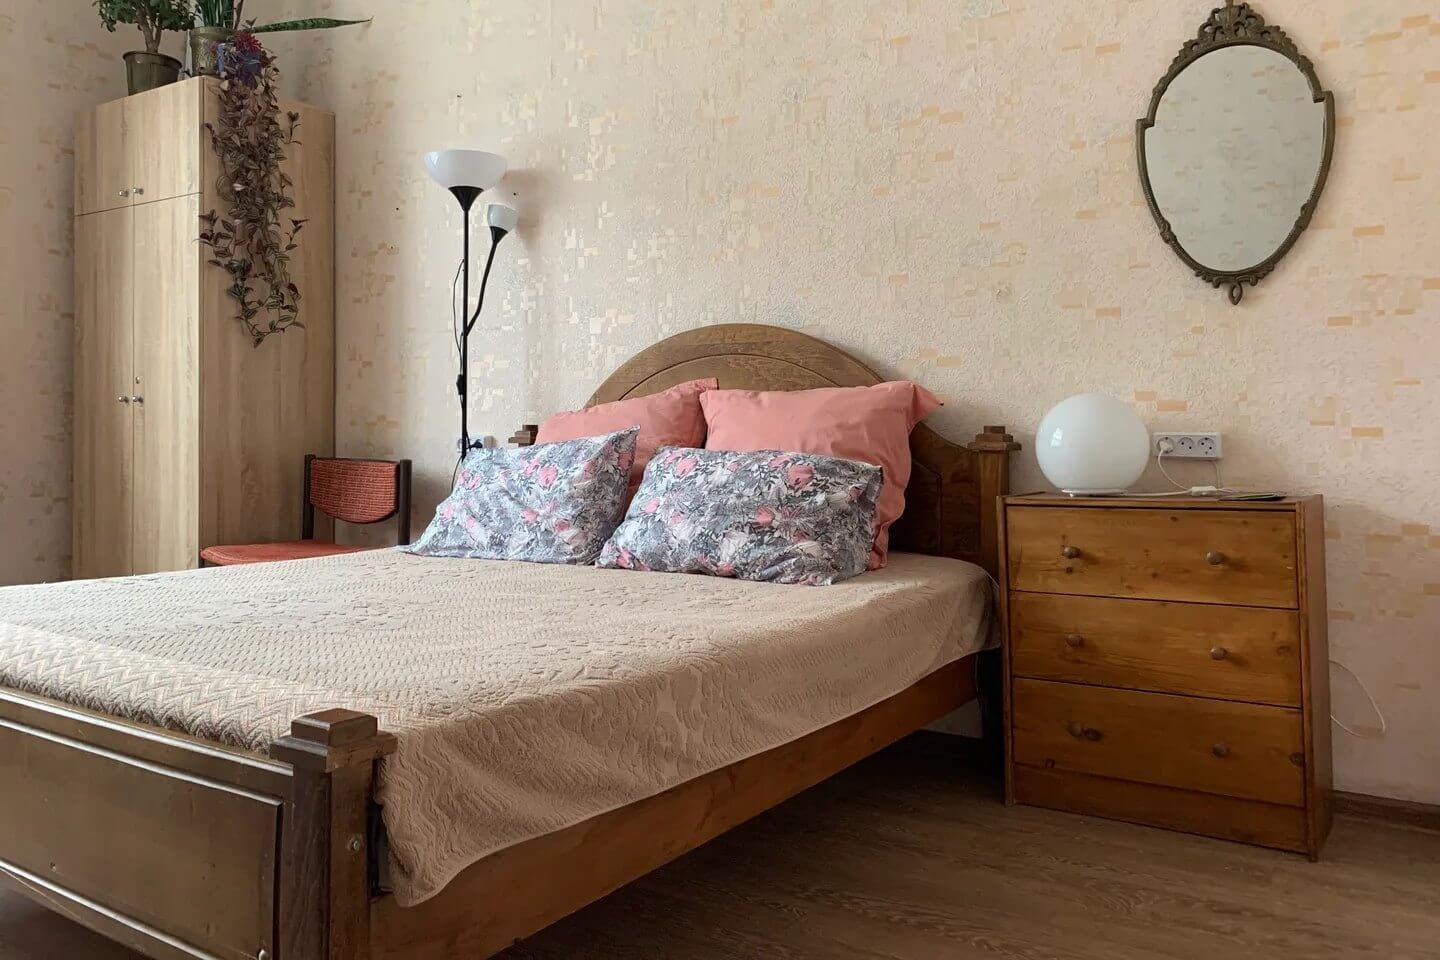 Основание кровати изготовлено из массива дерева.